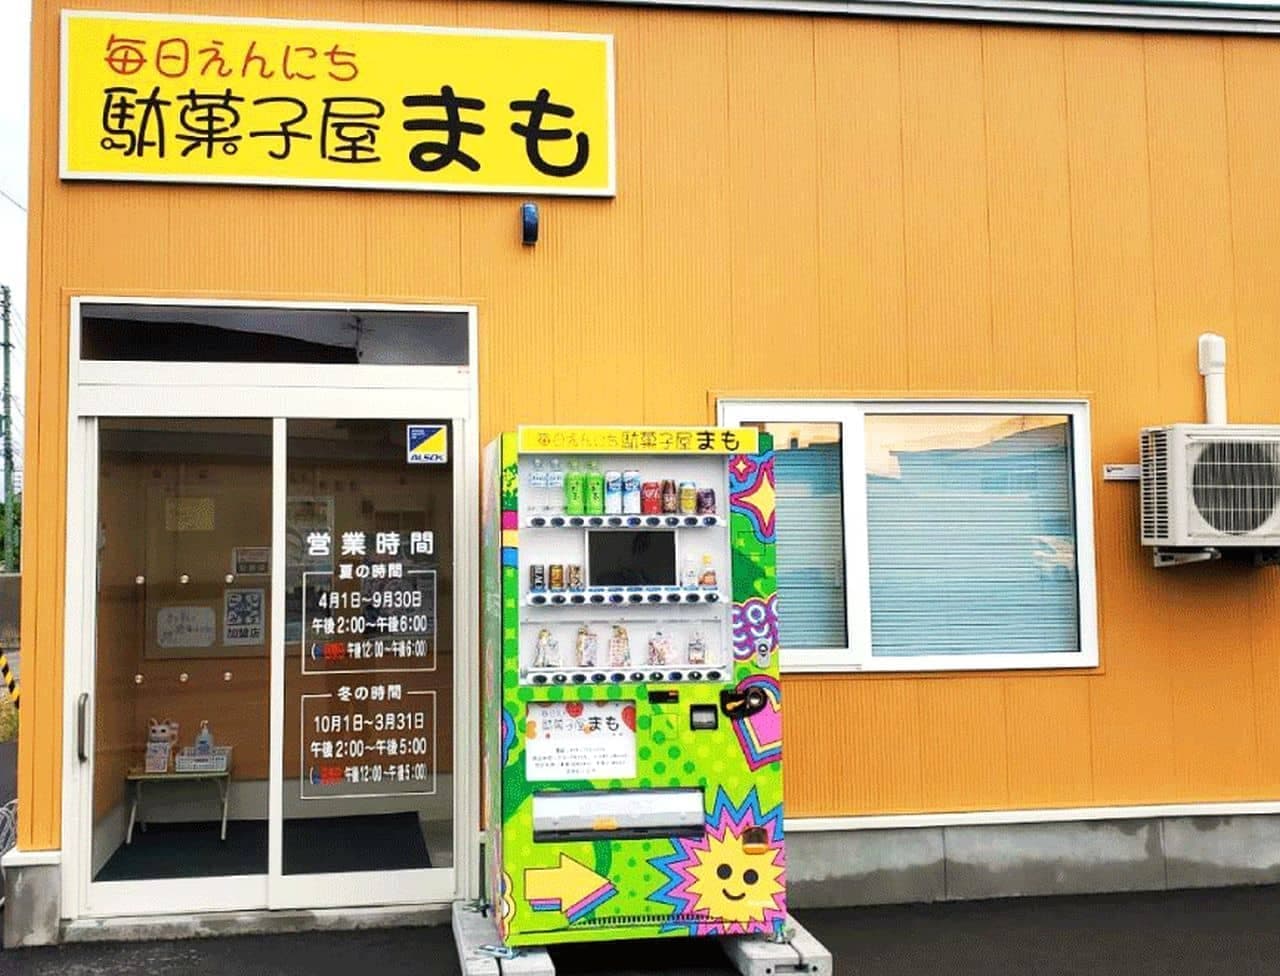 駄菓子の自動販売機「駄菓子屋まも」が設置 開店時間前にも商品を届けたいという想いを実現